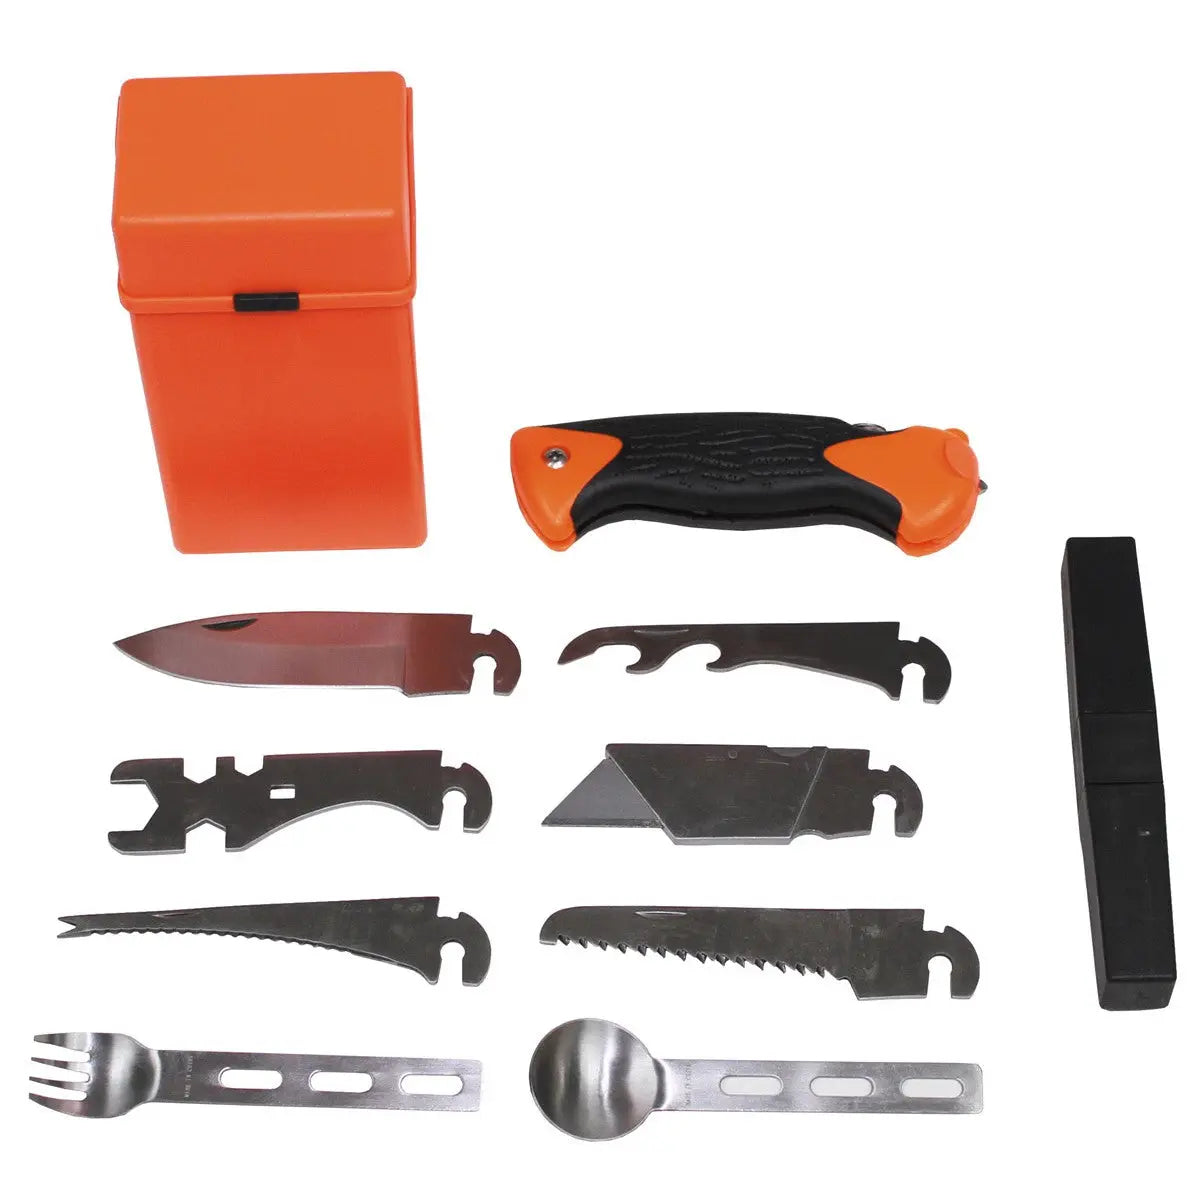 Survival Kit, "Special", 27-part, orange NSO Gear Survival Kit